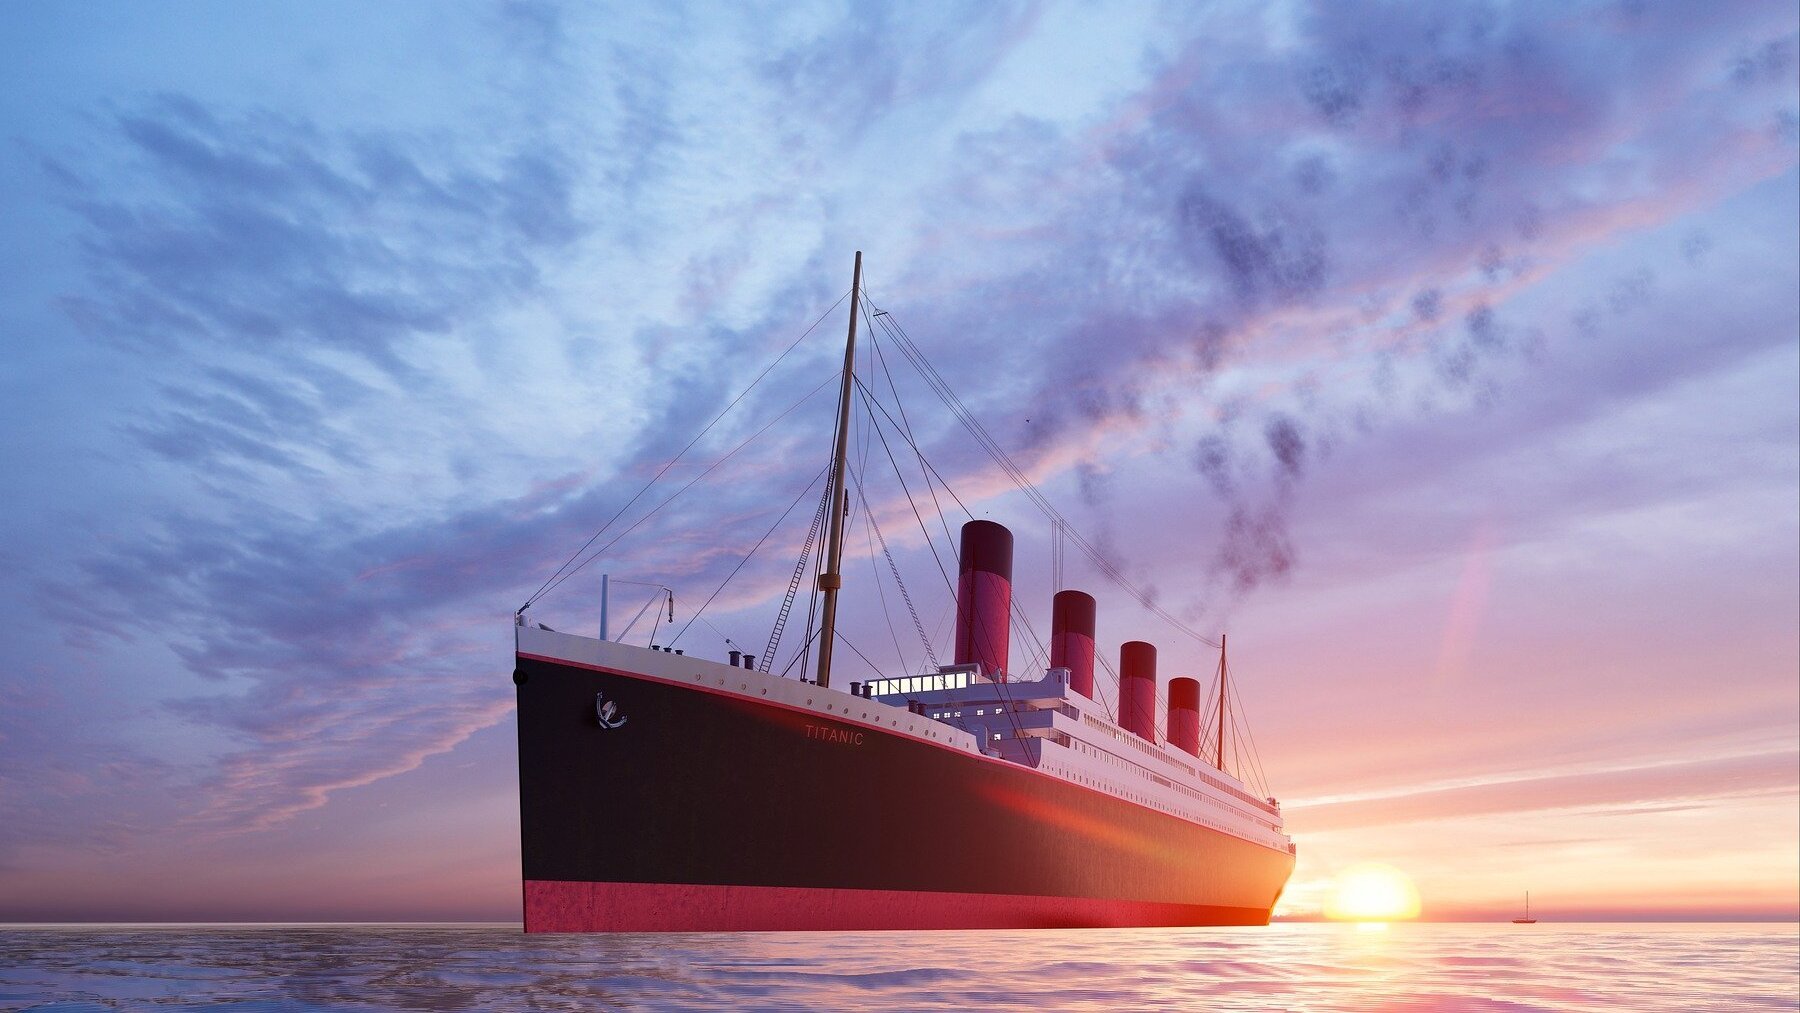 La canción que tocaba la orquesta durante el hundimiento del Titanic